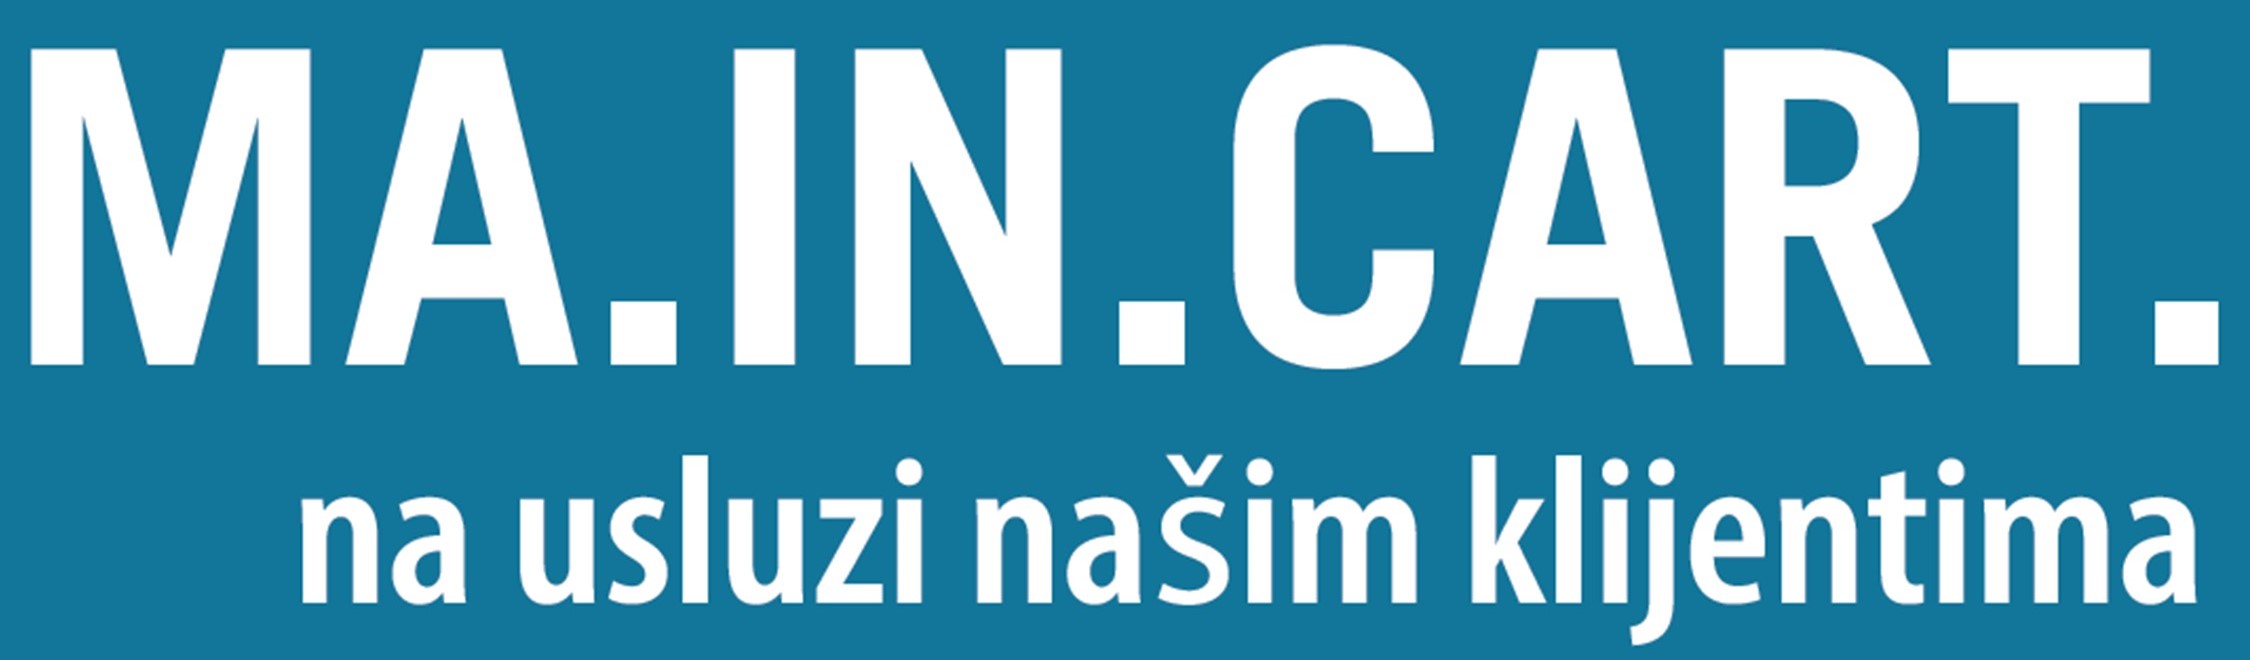 logo Croazia Maincart